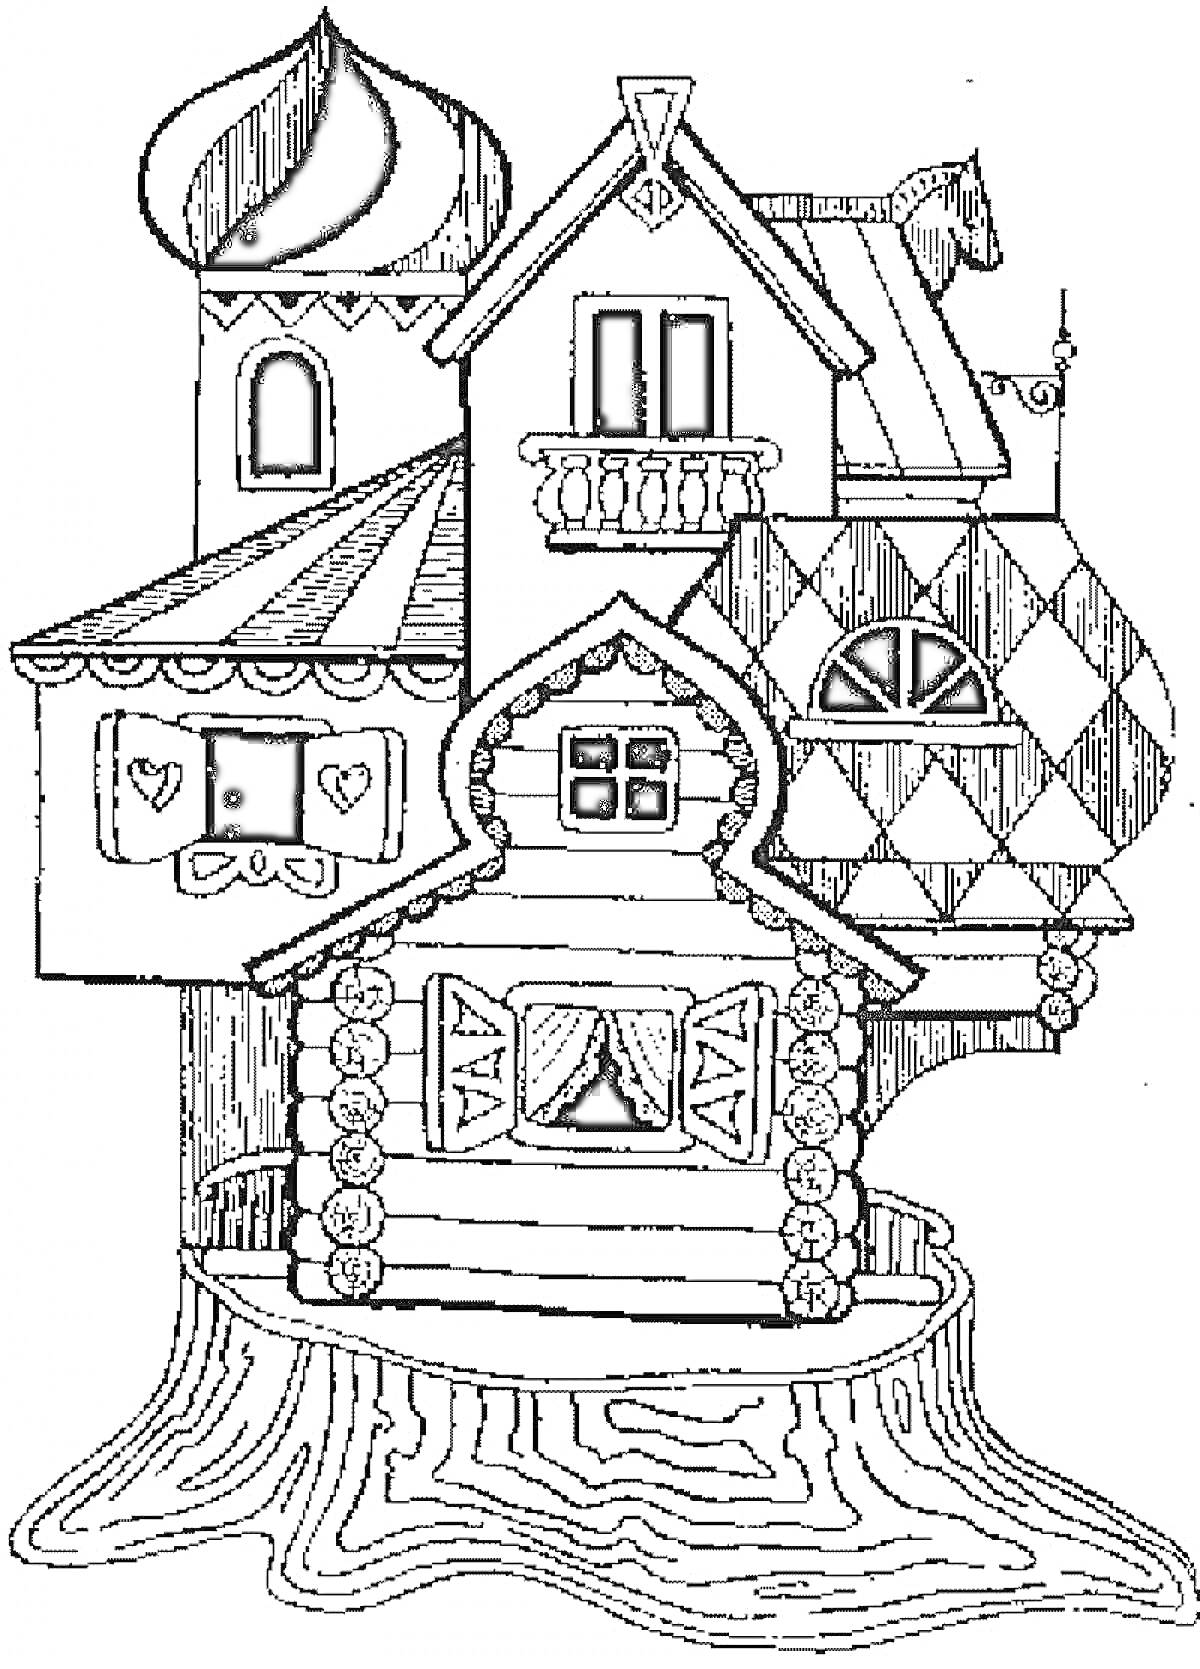 Раскраска Теремок с башенкой, балконом, окнами с занавесками, узором в виде ромбов и сердечек на стенах, стоящий на пне